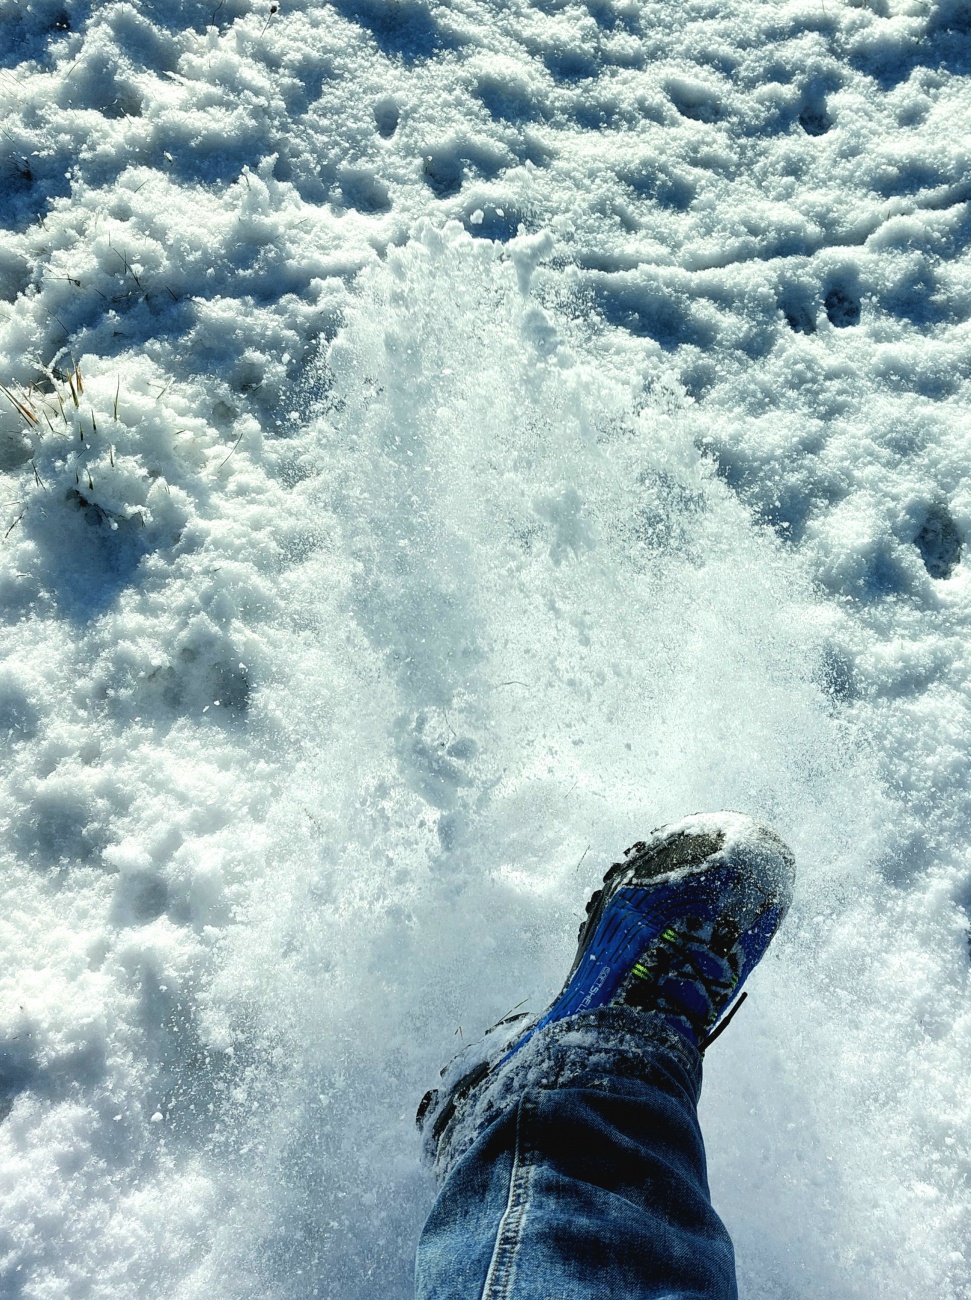 Foto: Martin Zehrer - Viel Pulver-Schnee unter den Schuhen...<br />
<br />
Endlich wieder ein herrlich sonniger Winter-Tag. <br />
Bei -5 Grad Kälte strahlte die Sonne wirklich voller Energie vom blauen Himm 